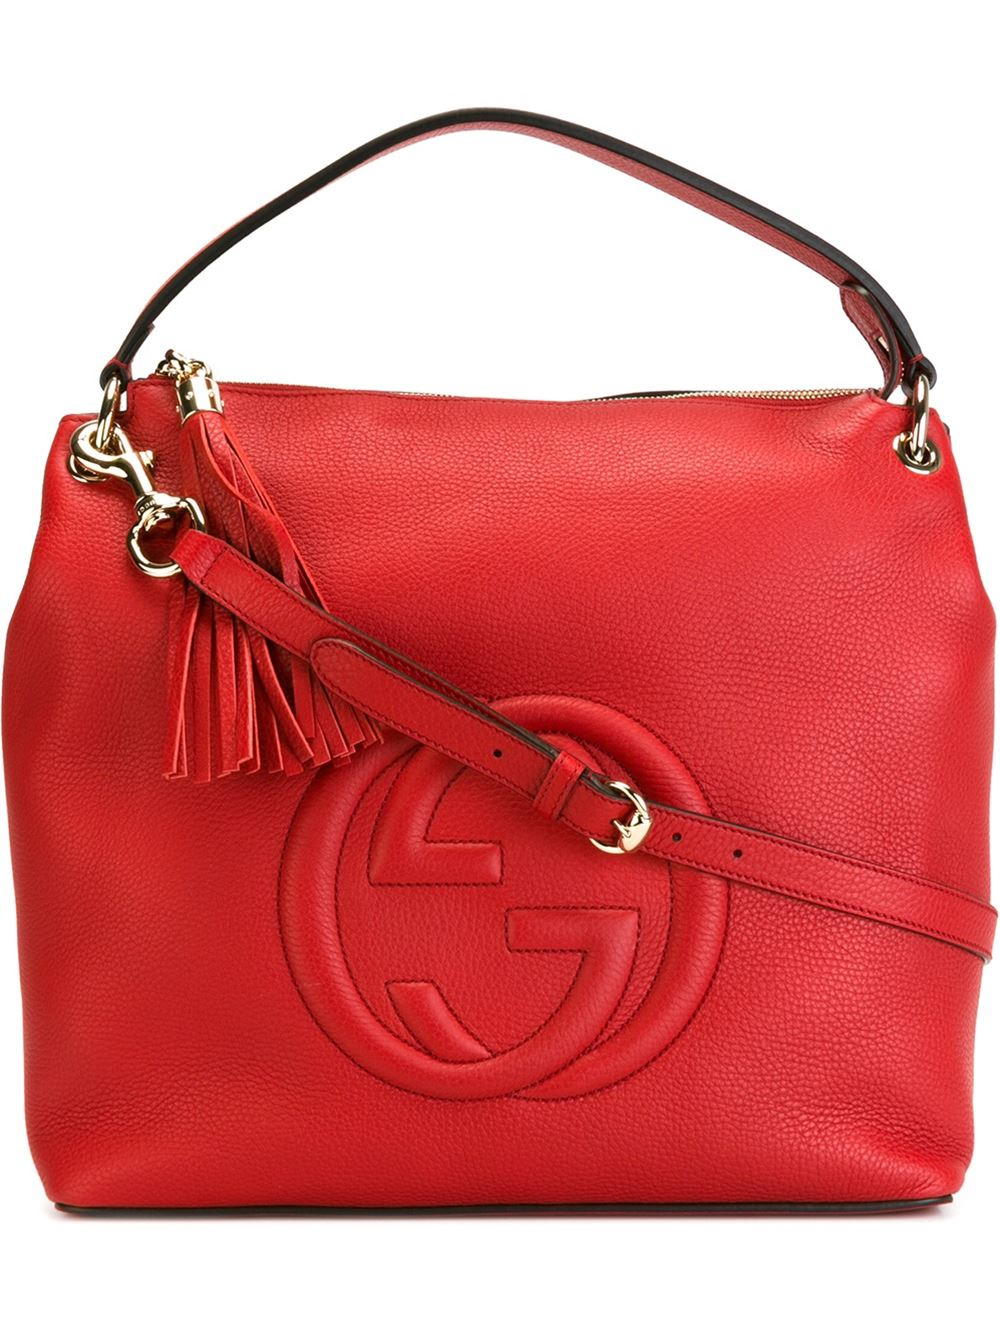 gucci handbags at bloomingdale's